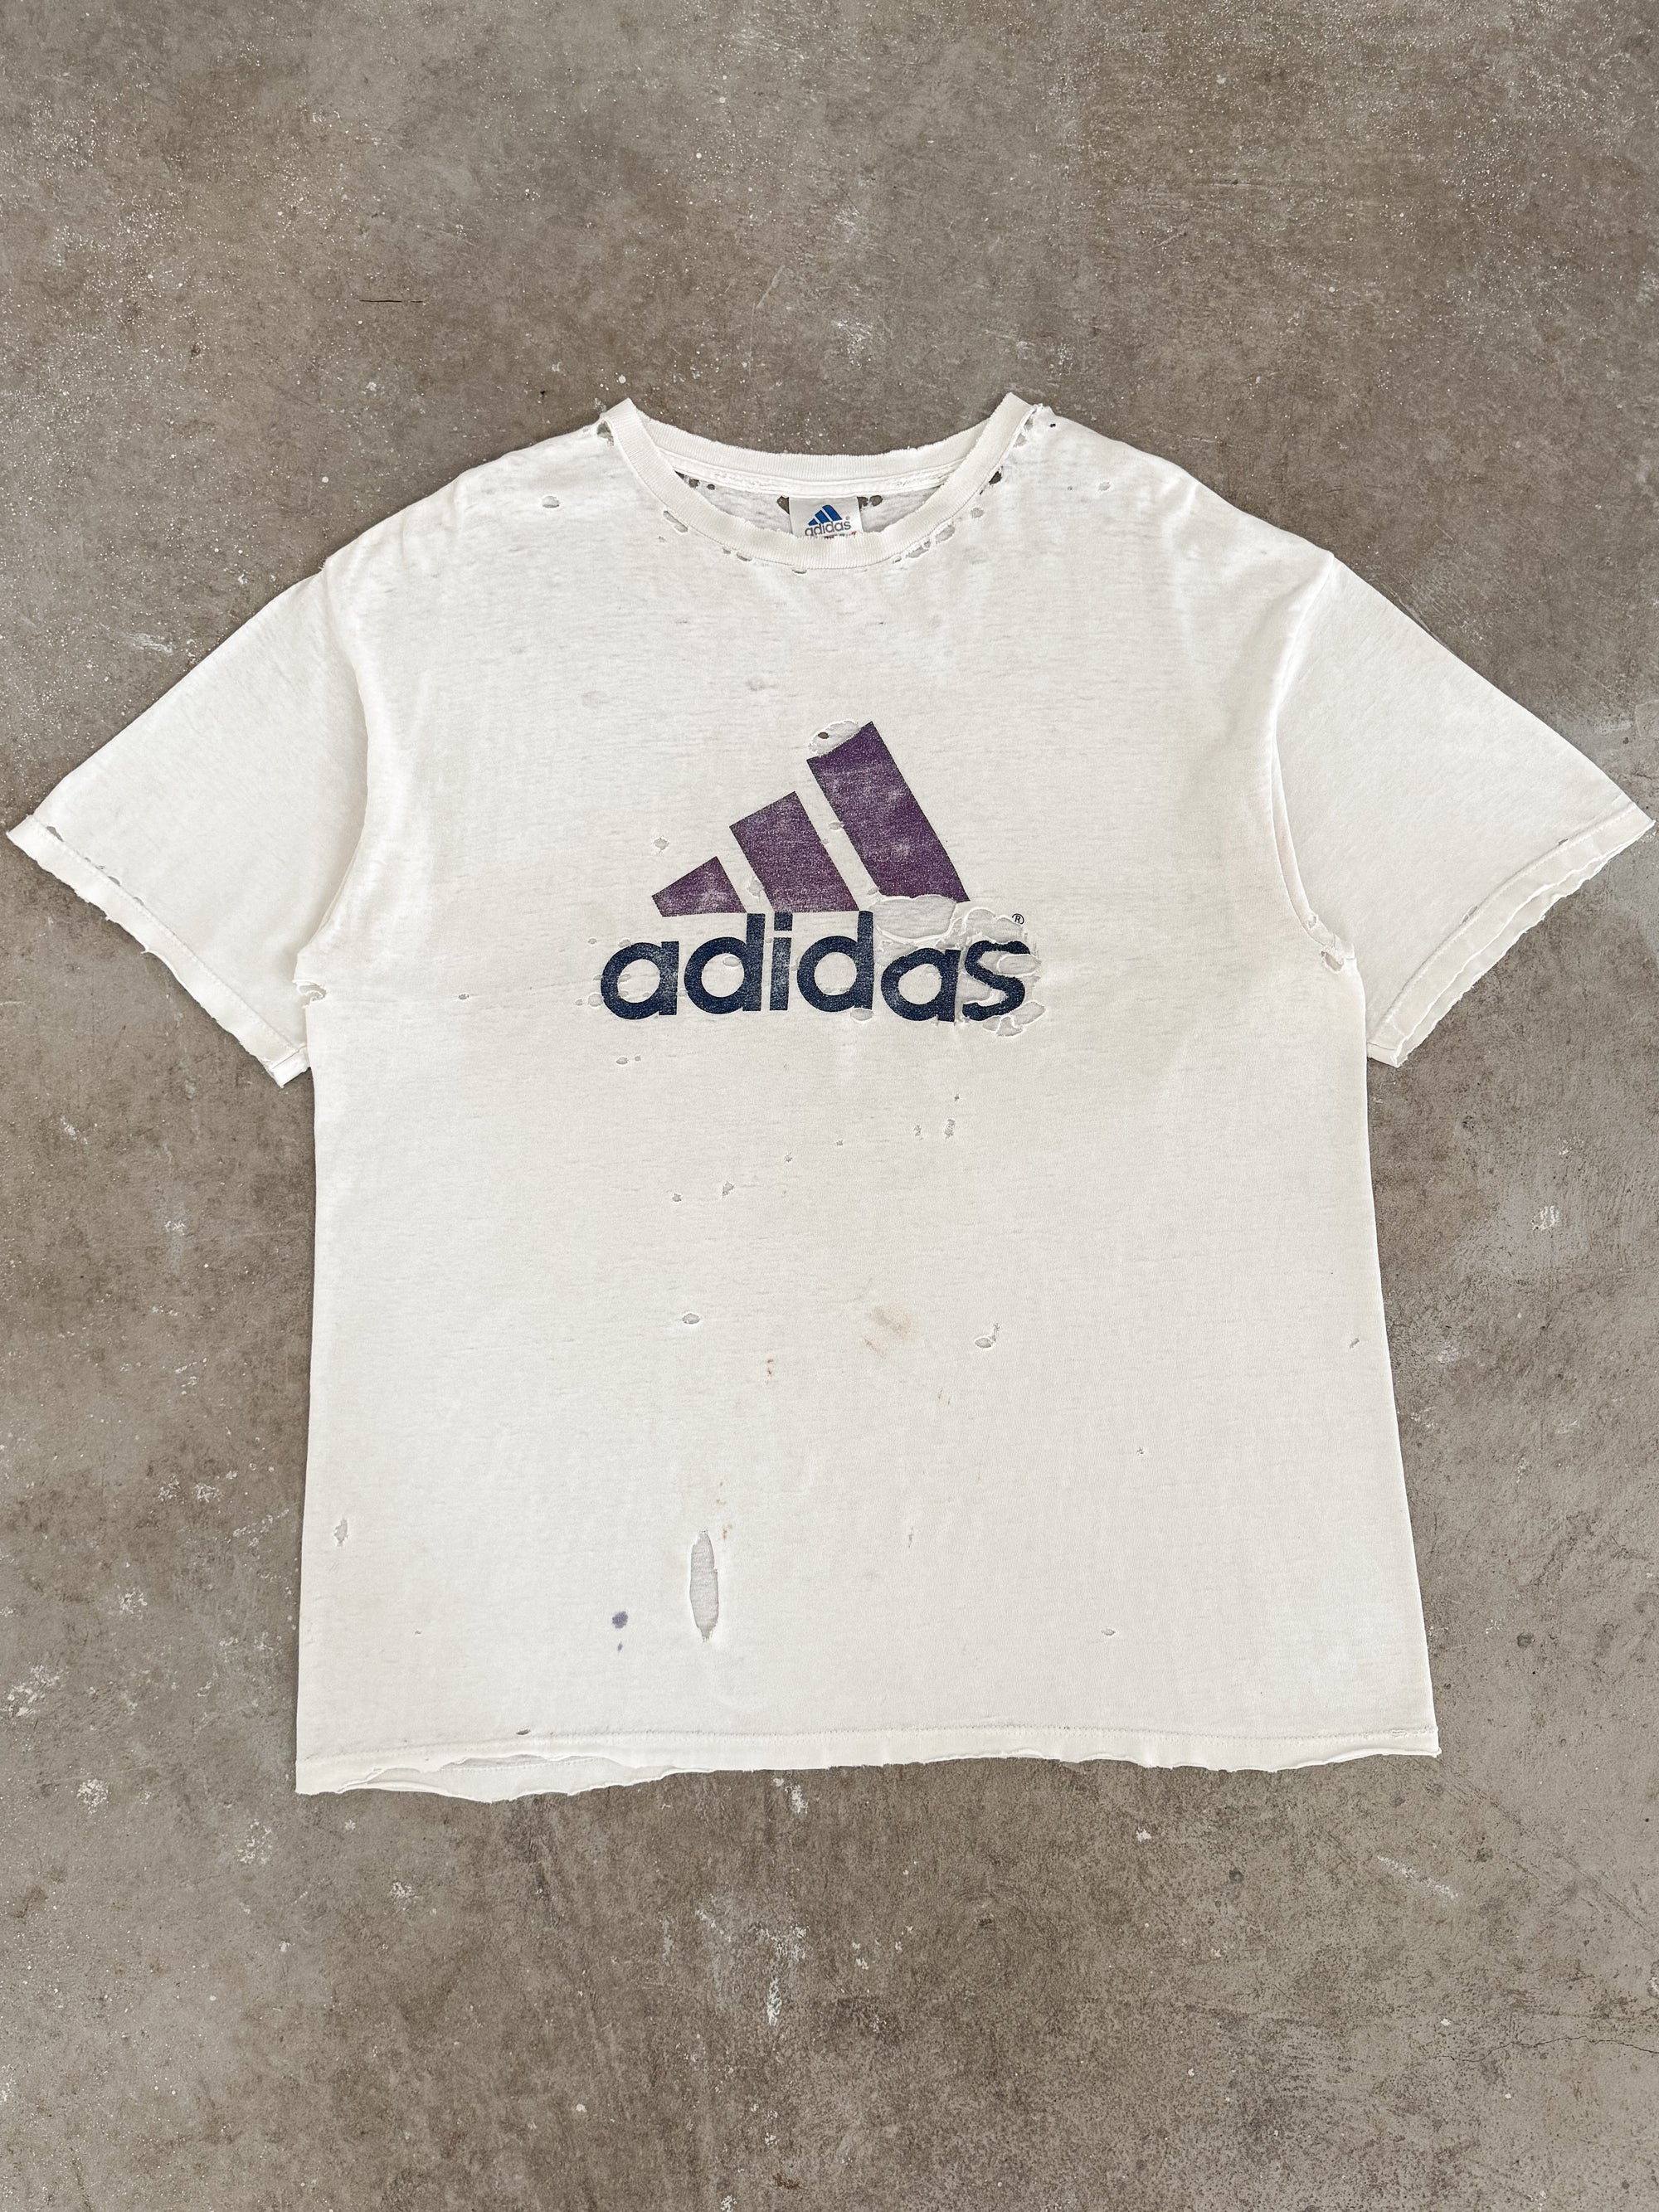 1990s "Adidas" Thrashed Tee (XL)